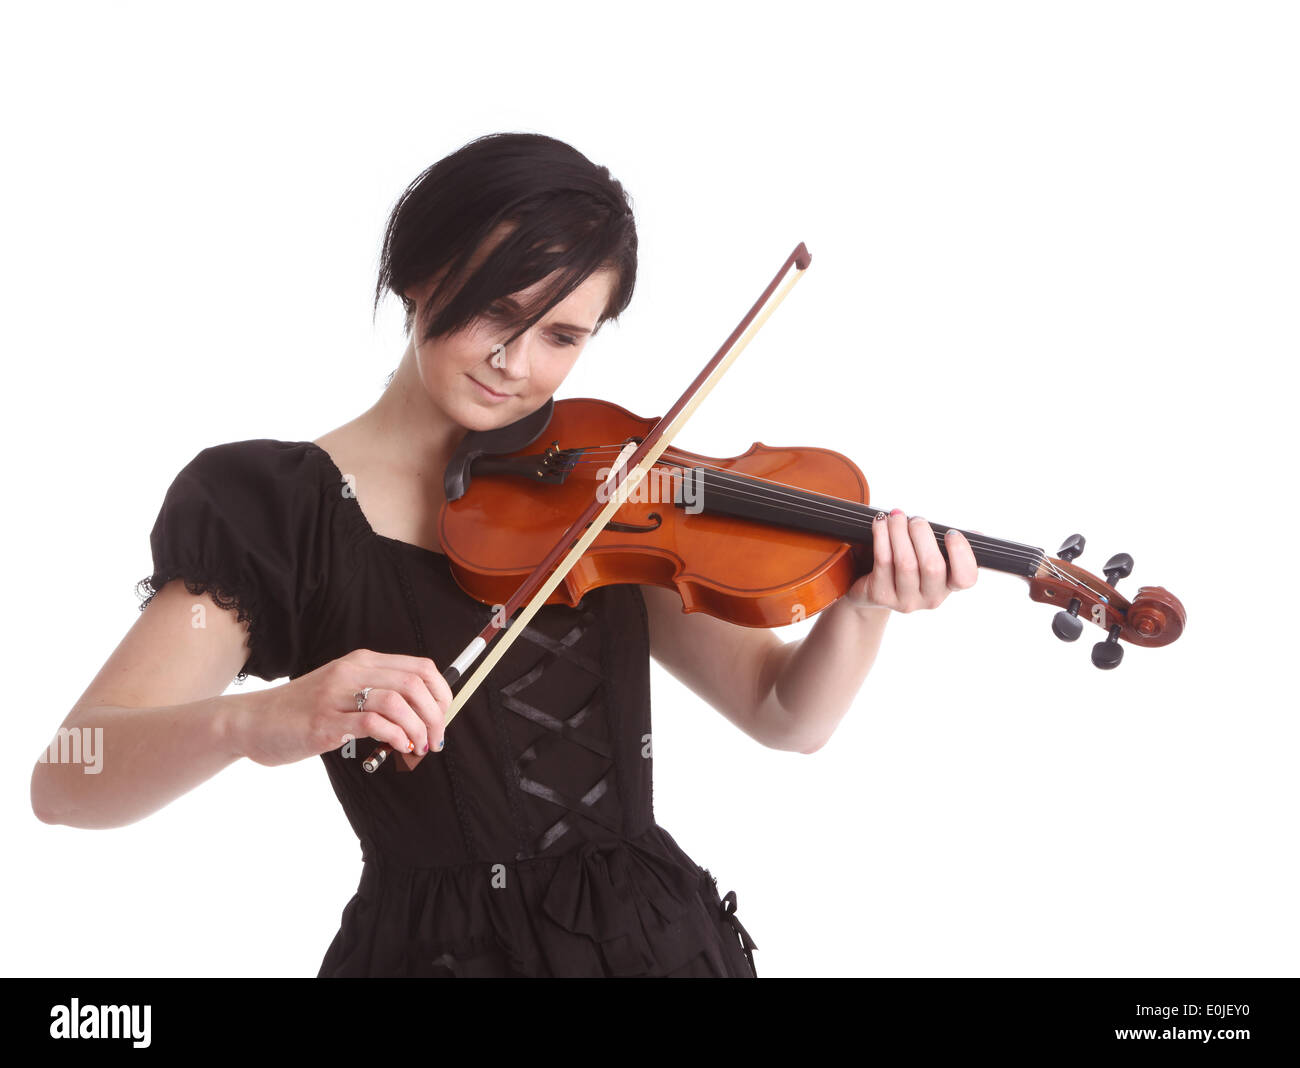 Jeune fille goth cosplay ou avec son violon, 5 septembre 2013 Banque D'Images